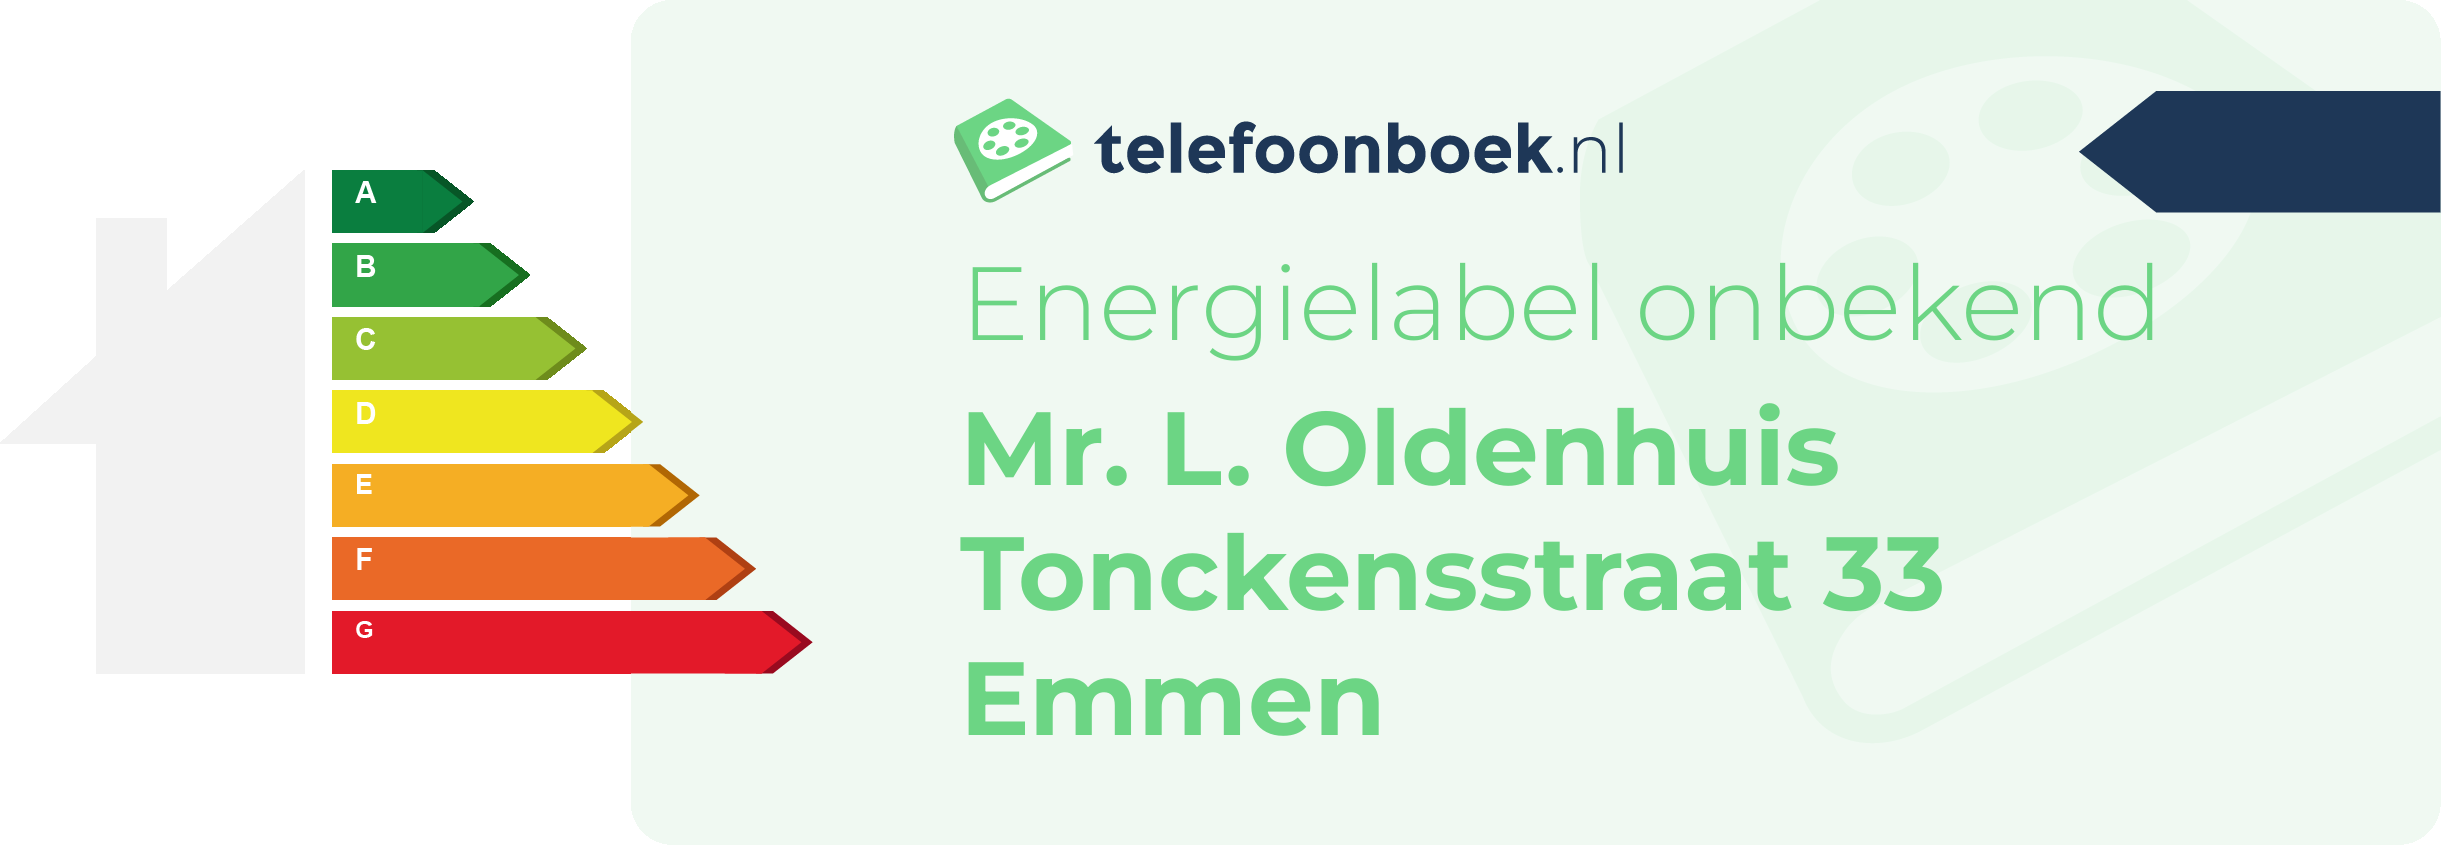 Energielabel Mr. L. Oldenhuis Tonckensstraat 33 Emmen